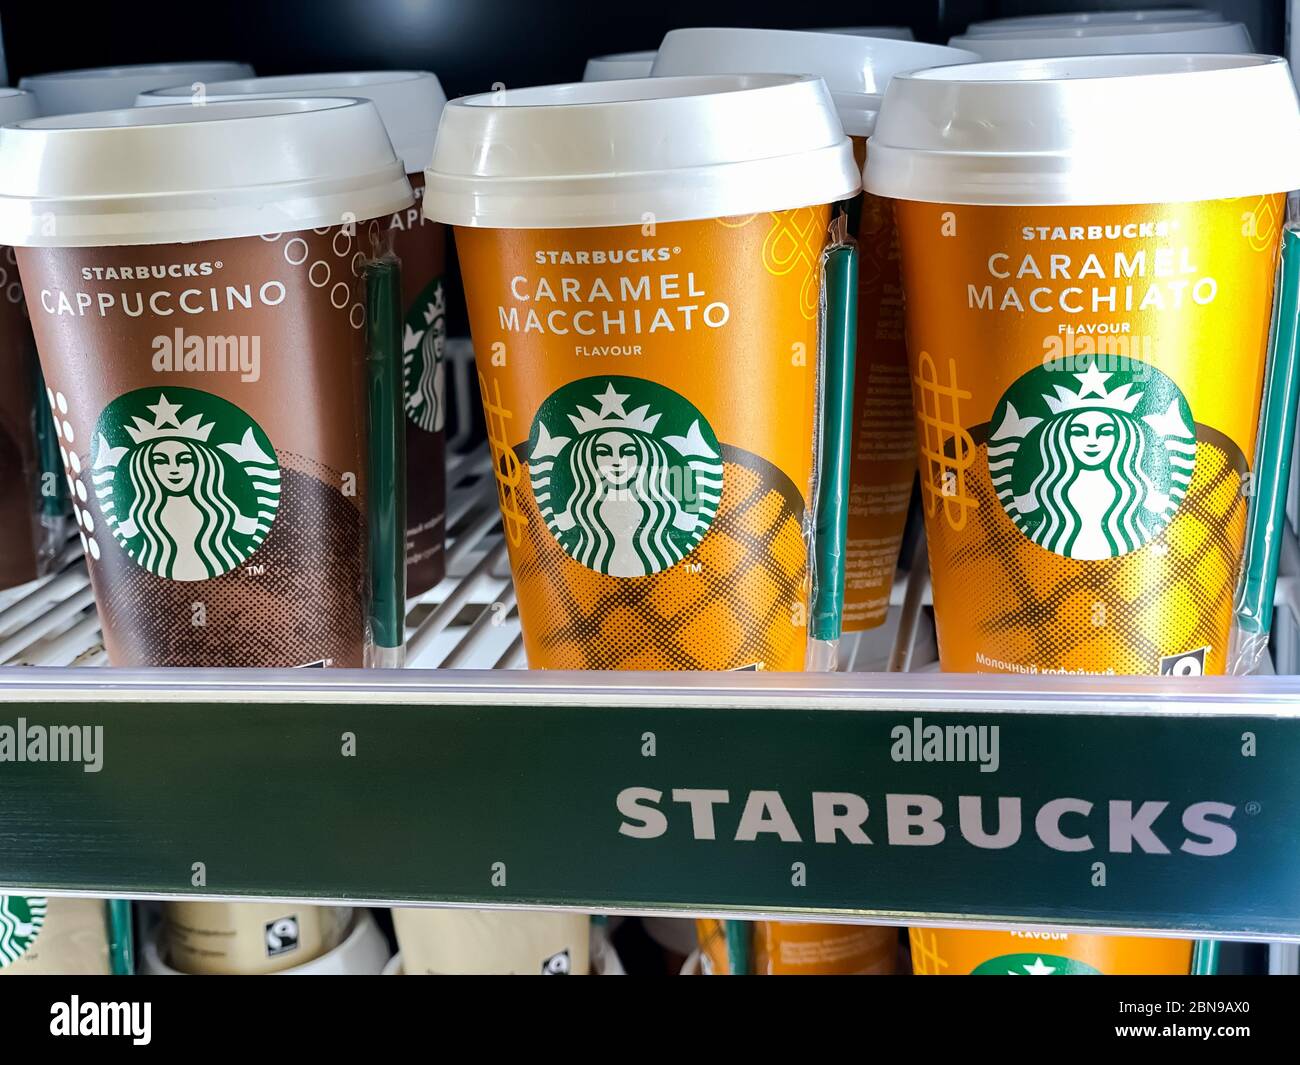 Le tazze da caffè Starbucks sono pronte per essere utilizzate in un frigorifero supermercato. Fotografia mobile. Mosca, Russia - 06 febbraio 2020 Foto Stock